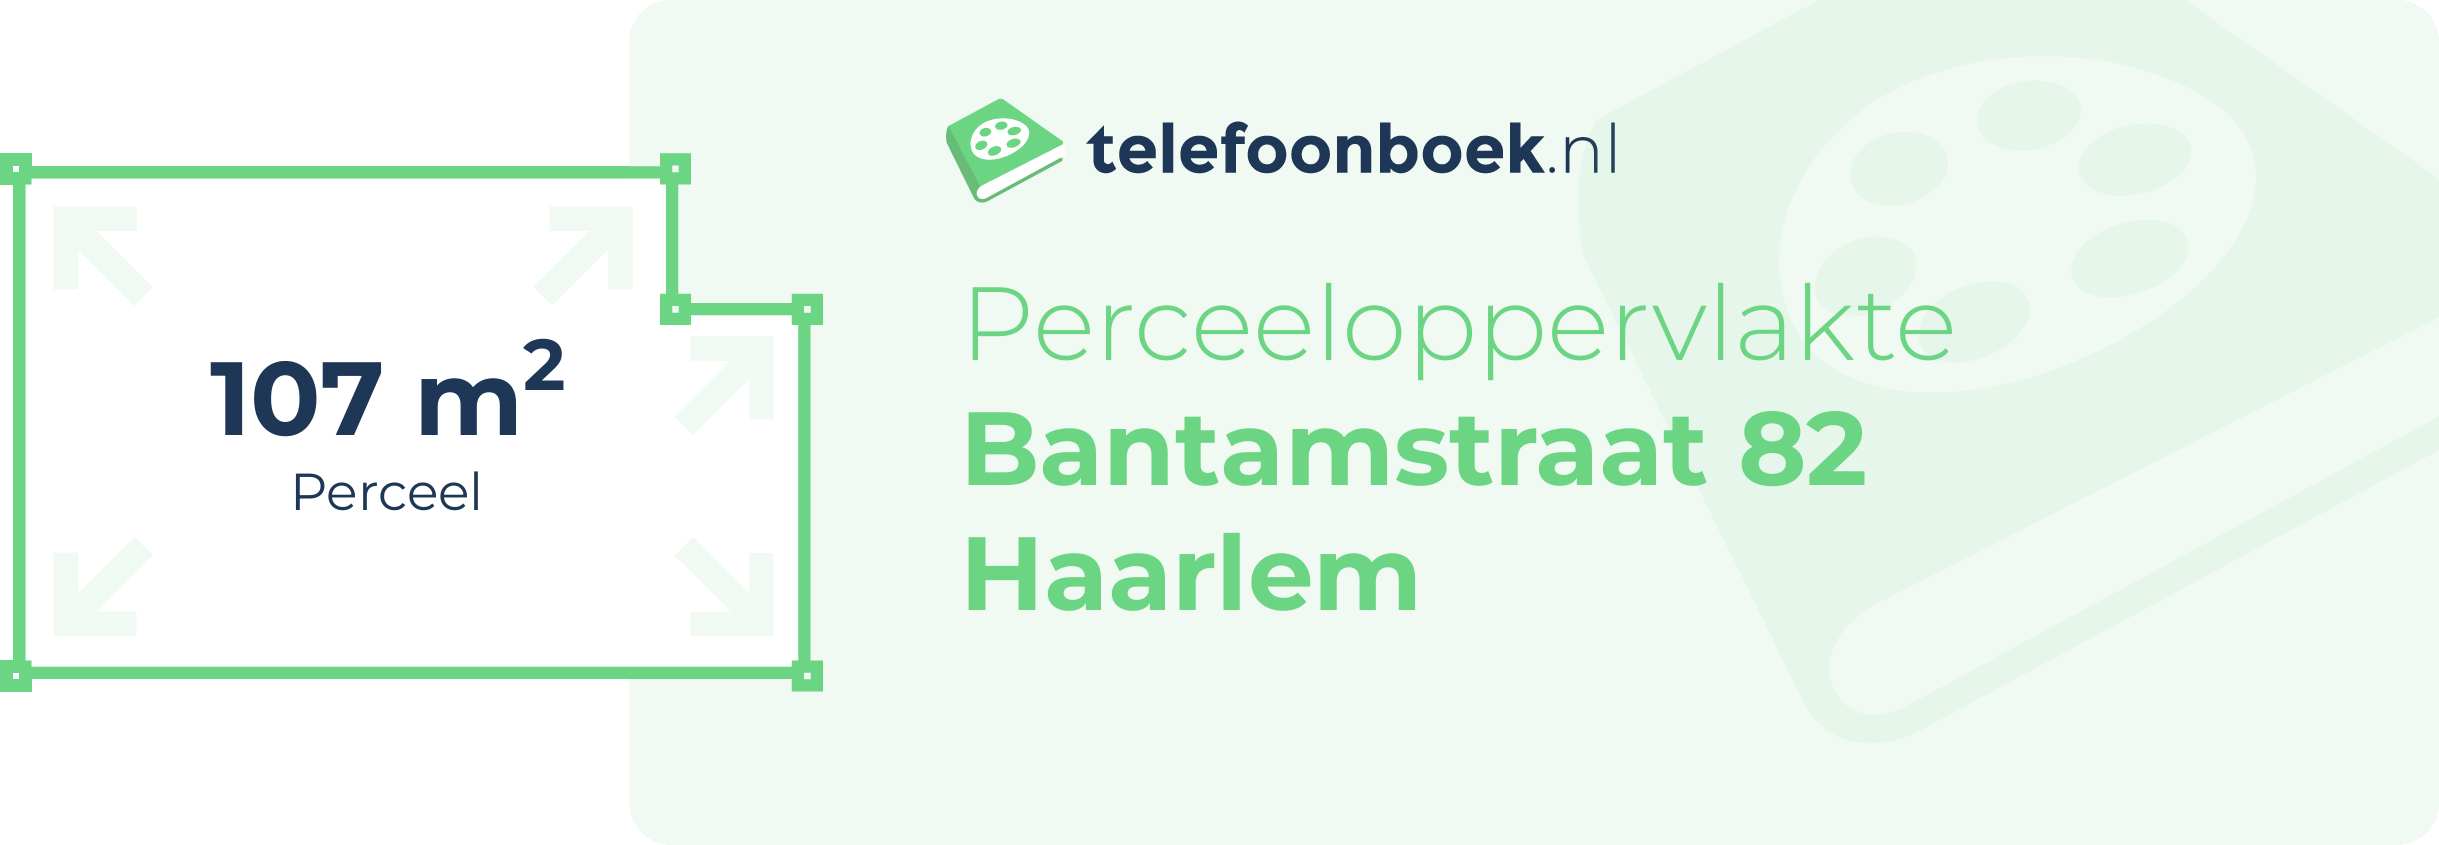 Perceeloppervlakte Bantamstraat 82 Haarlem